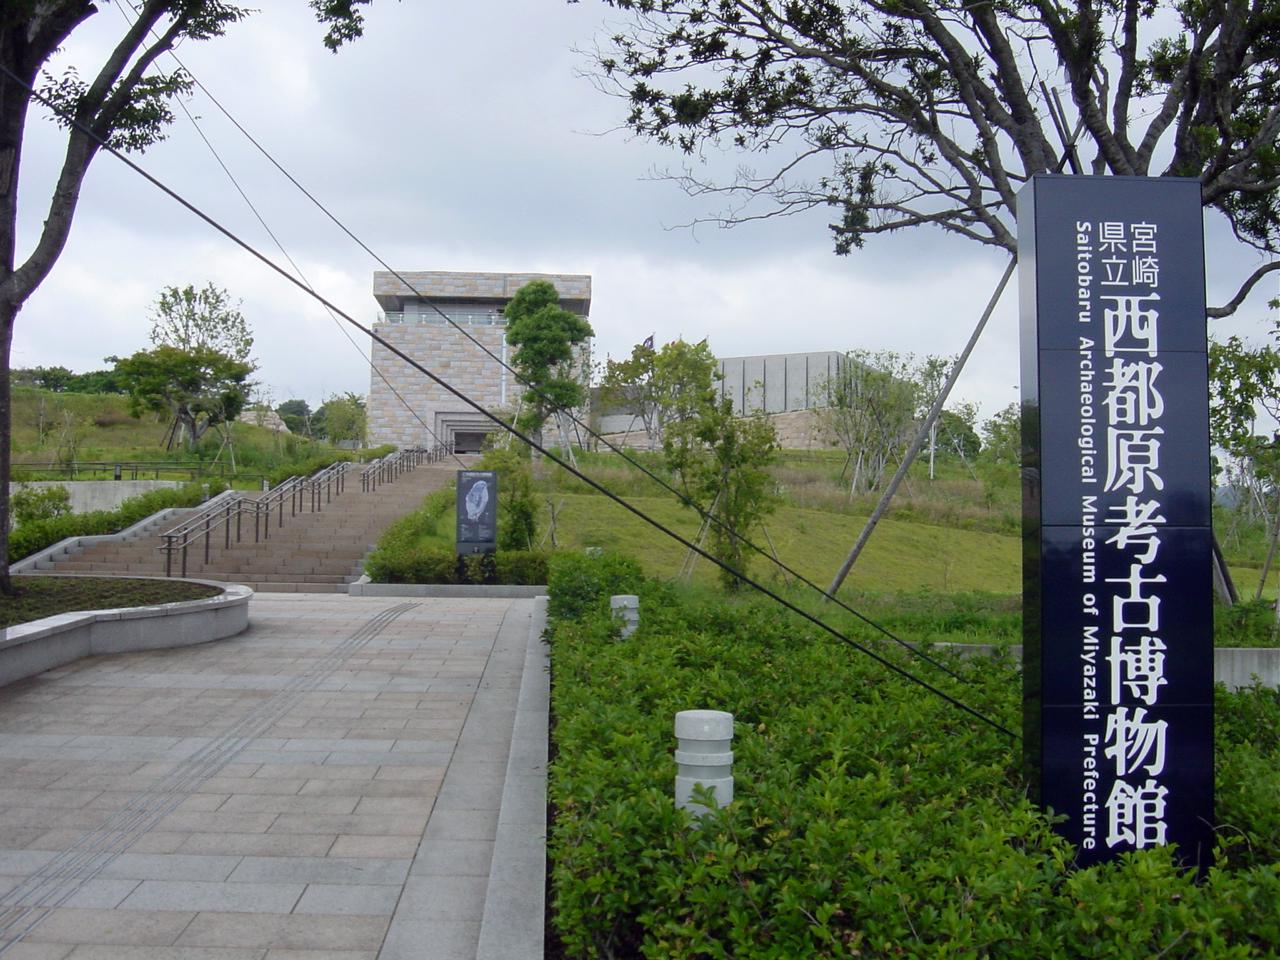 미야자키 현립 사이토바루 고고 박물관